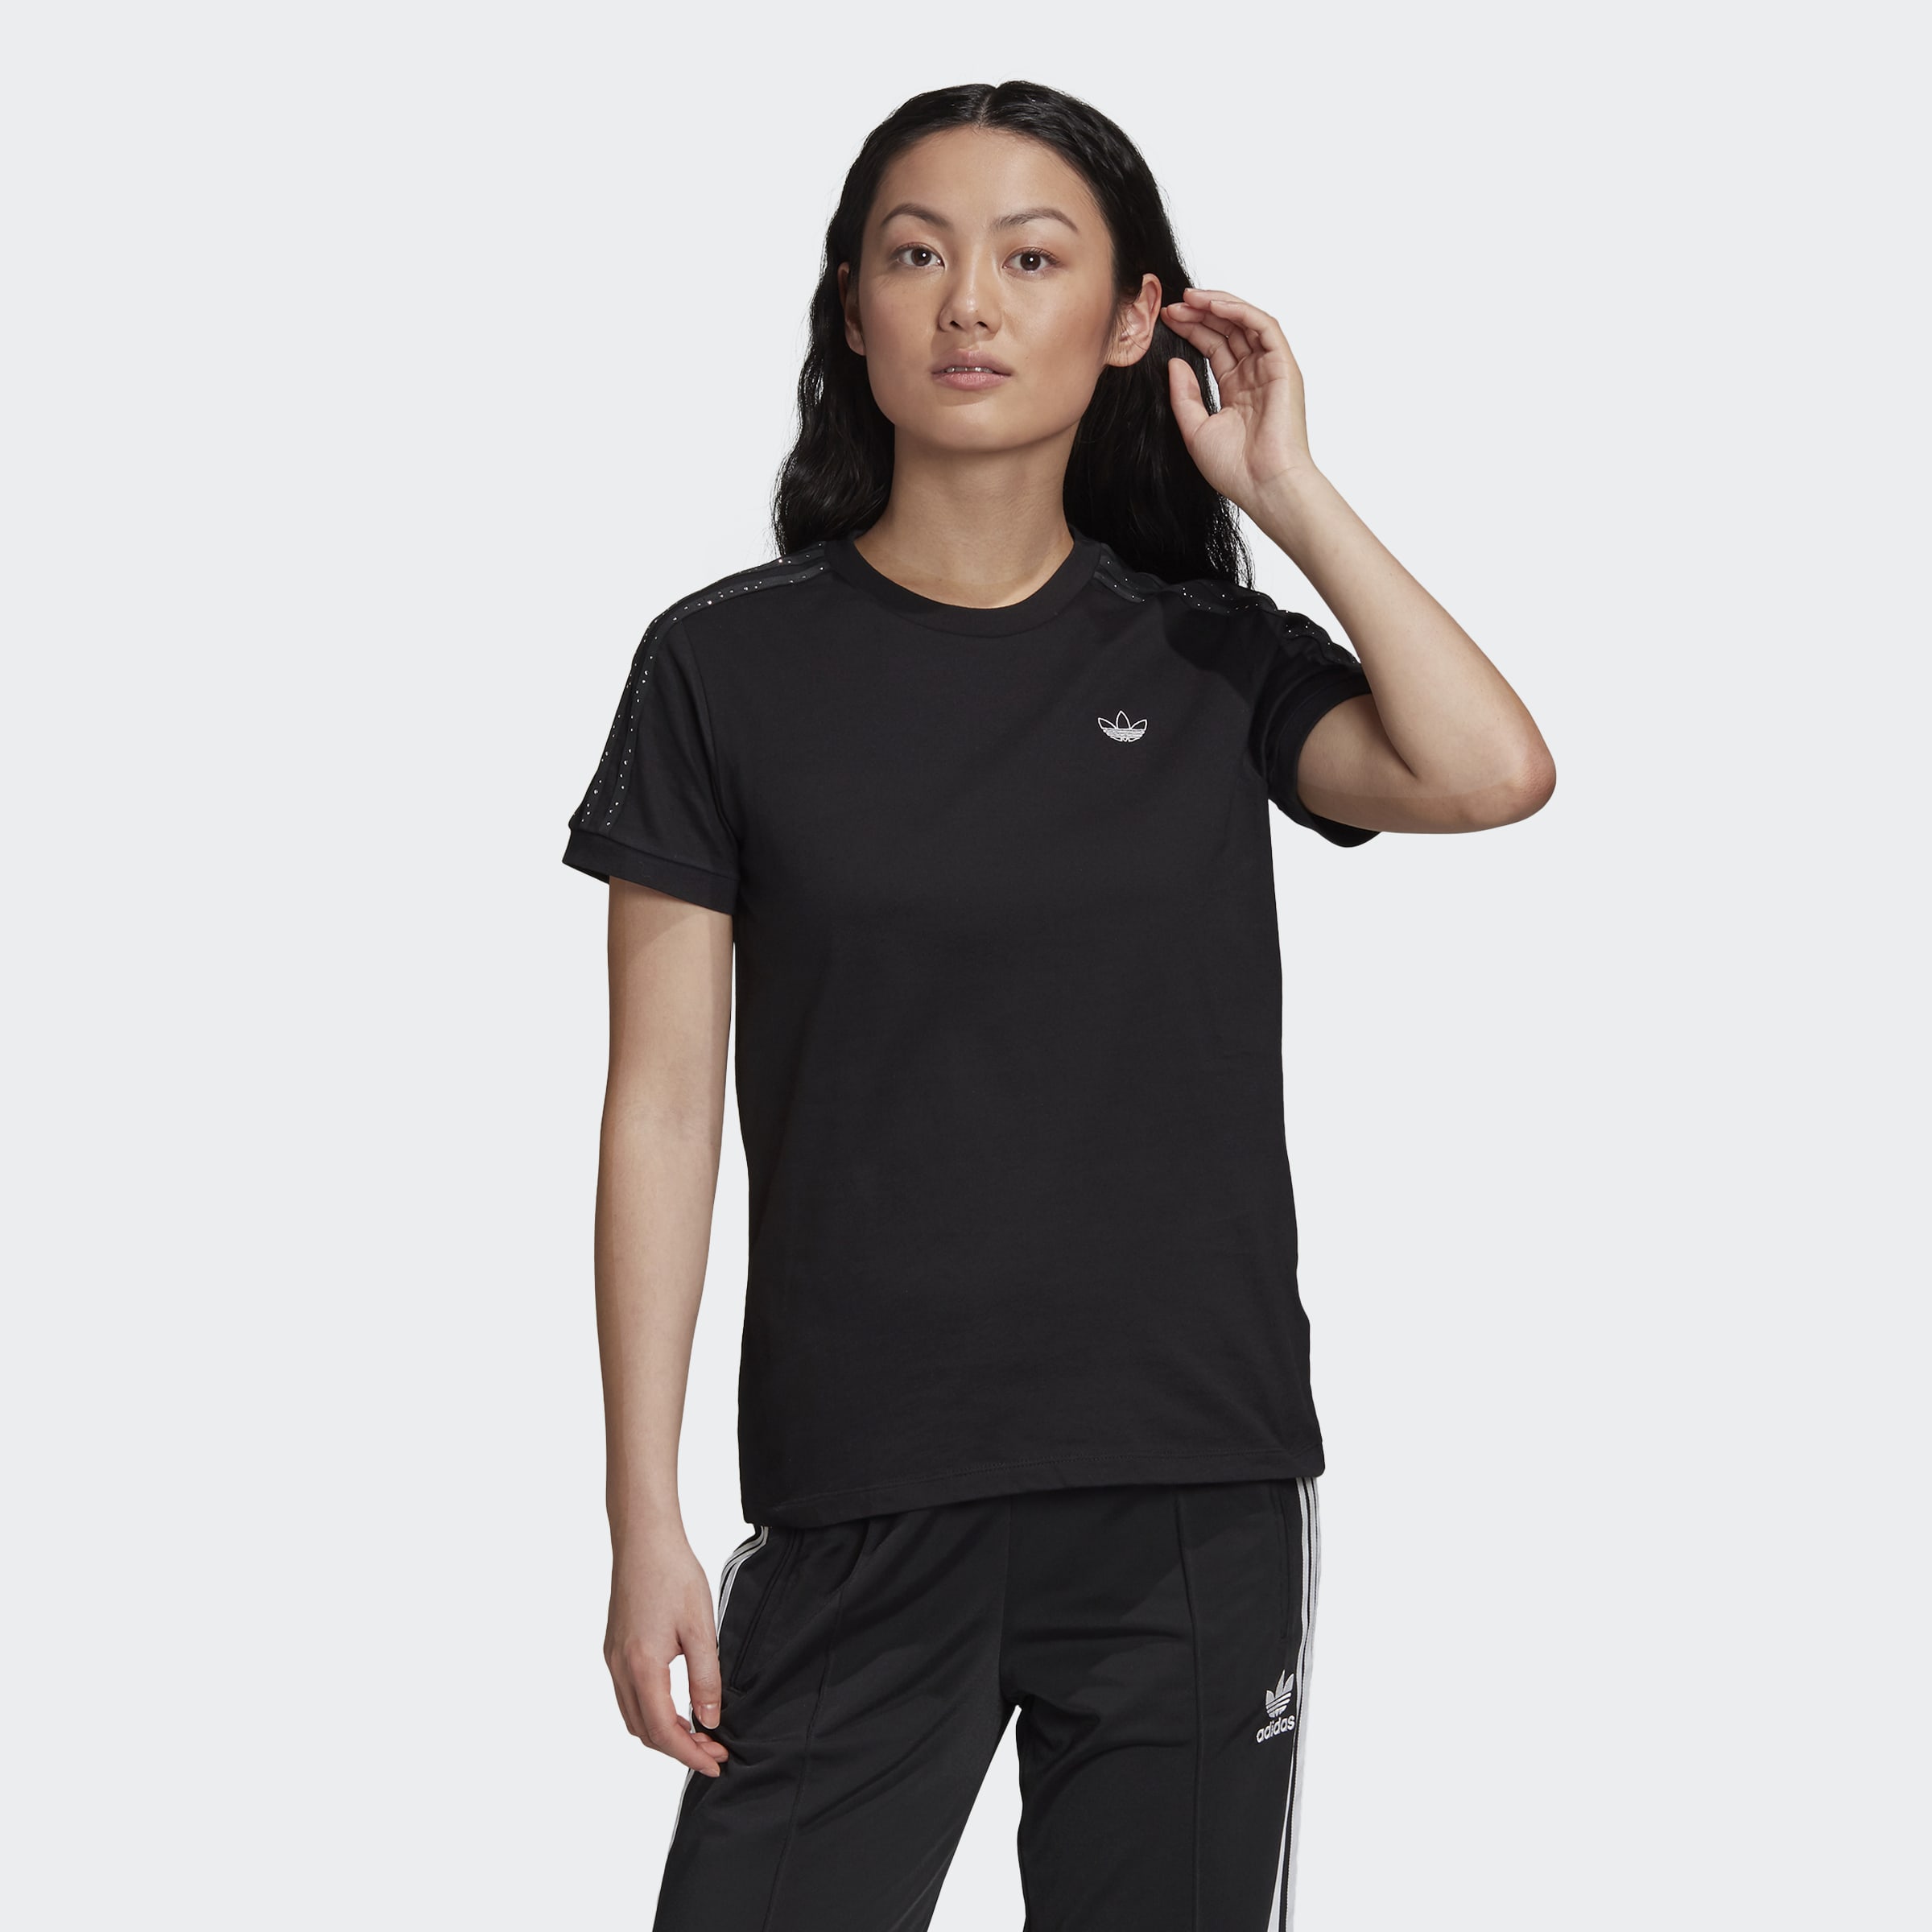 Adidas Originals T-Shirt schwarz Größe 32 34 36 38 40 42 44 46